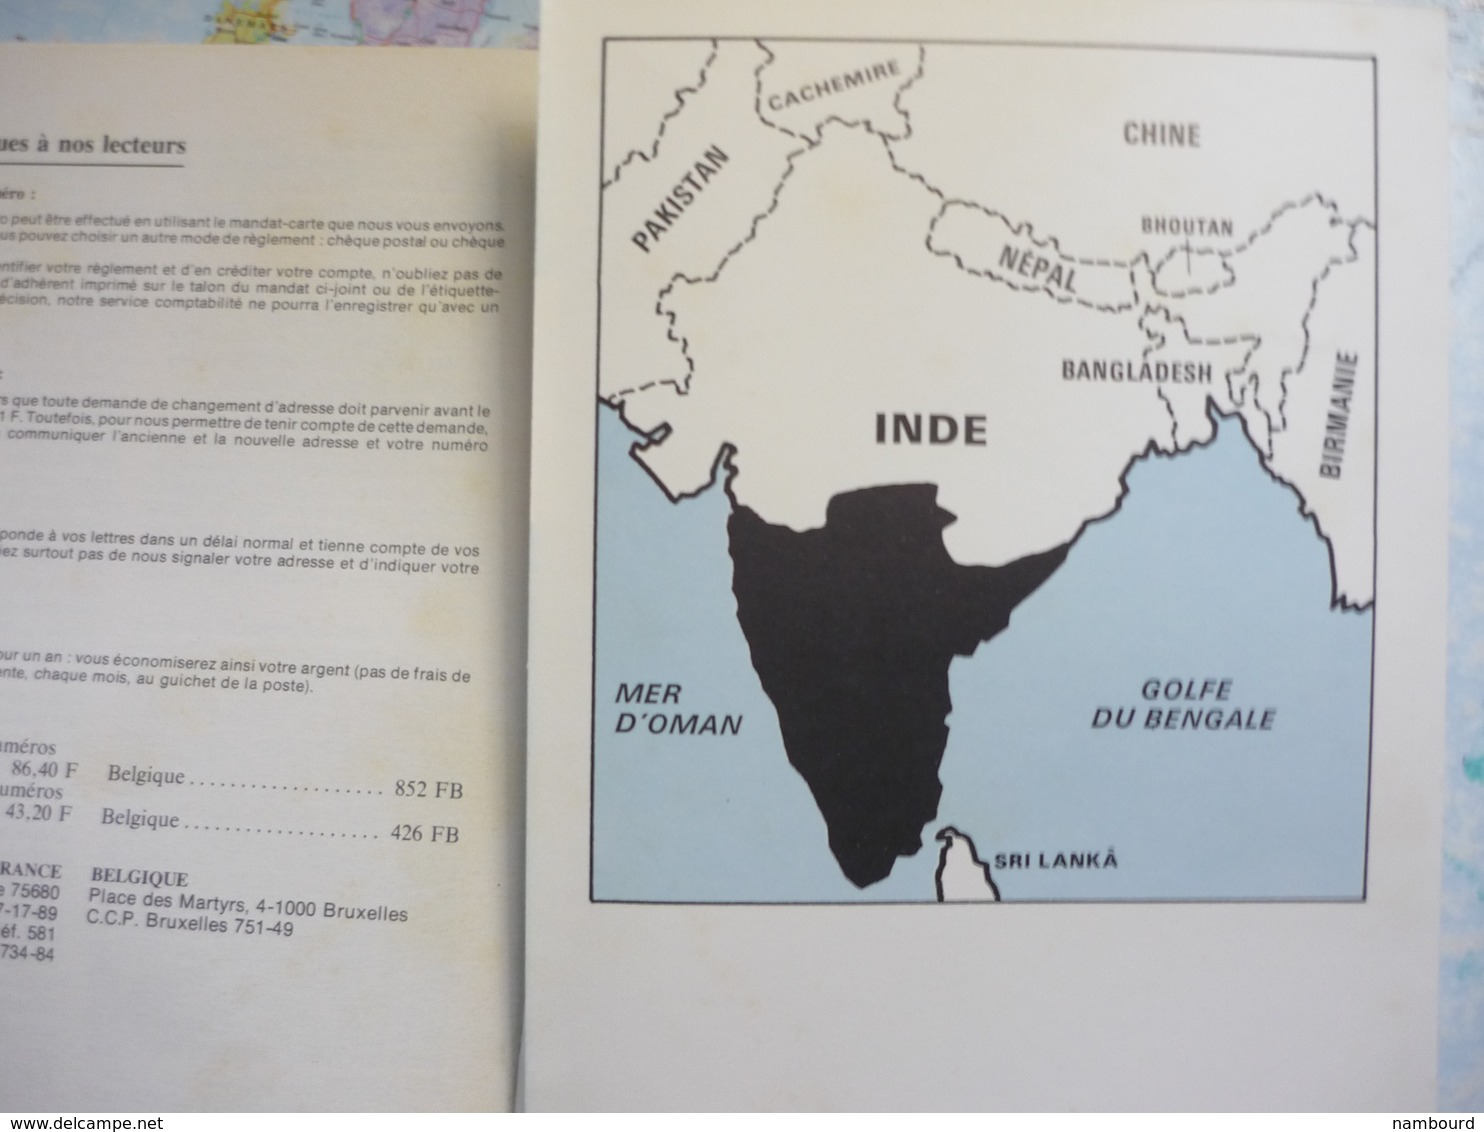 Tour du Monde Geographia  Bahrein / Migrations préhistoriques / L'Inde du Sud N°212 Mai 1977